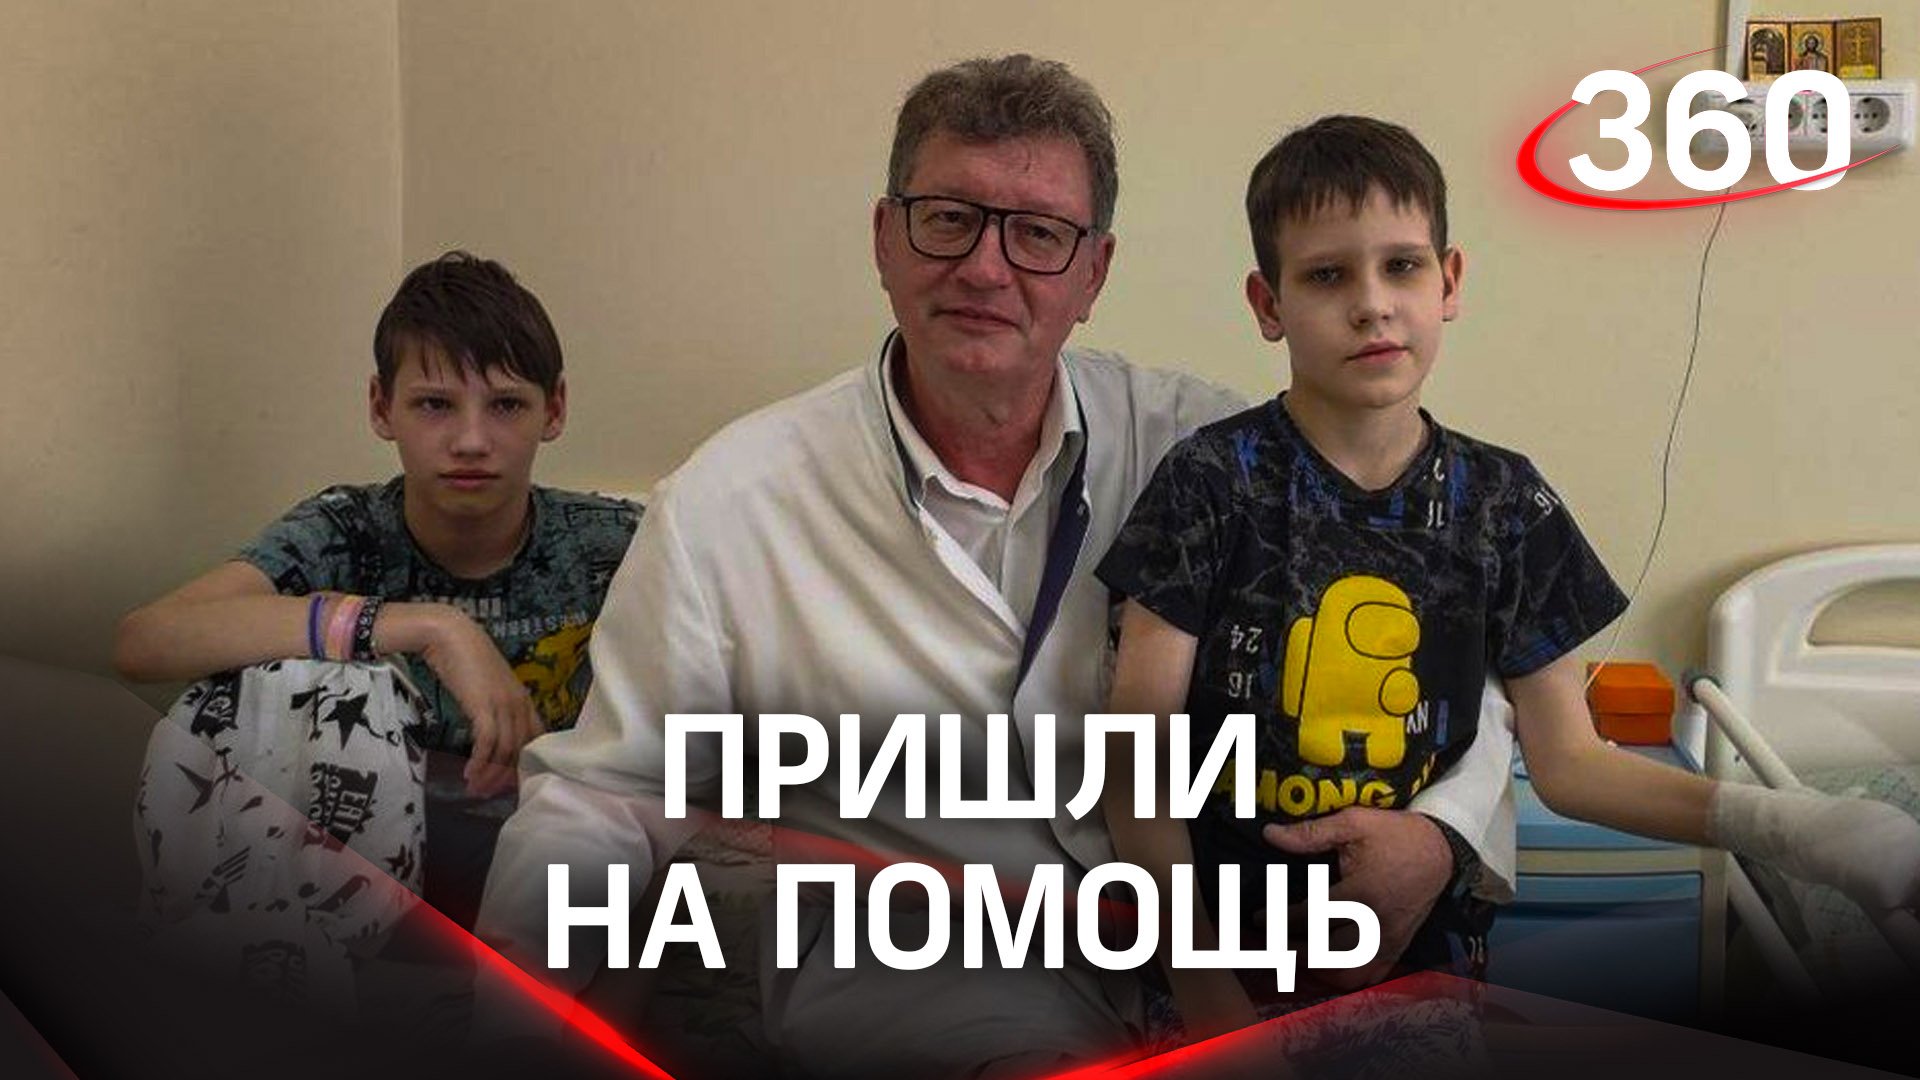 Двух братьев c тяжёлыми травмами конечностей из ДНР прооперировали в Челябинске